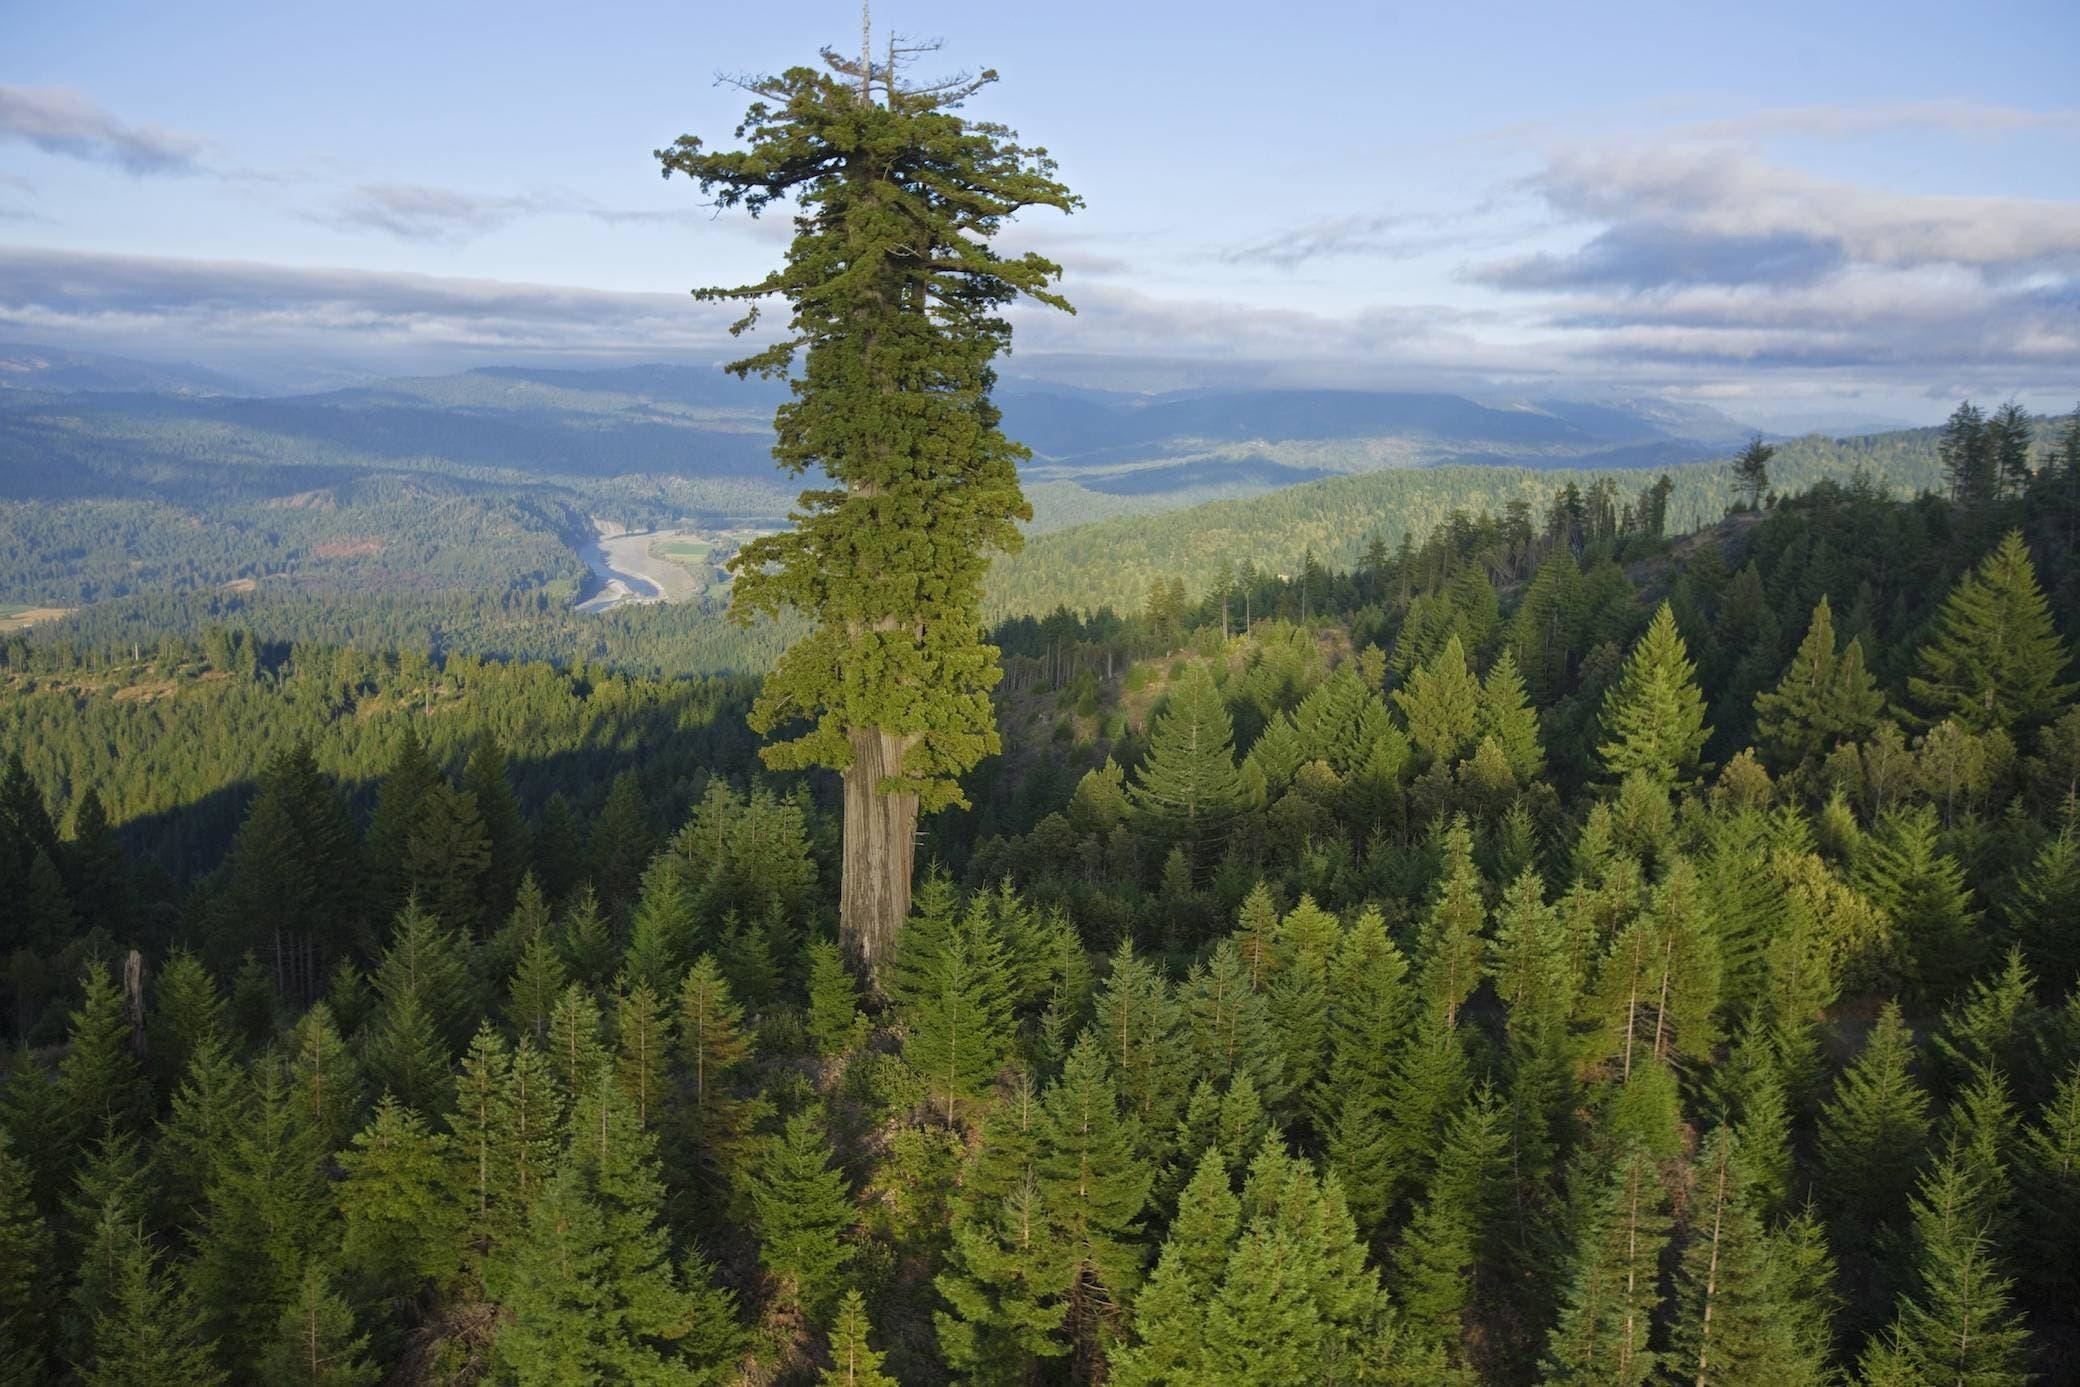 Гиперион, самое высокое дерево в мире. Его высота составляет 115 метров, а возраст-примерно 700-800 лет